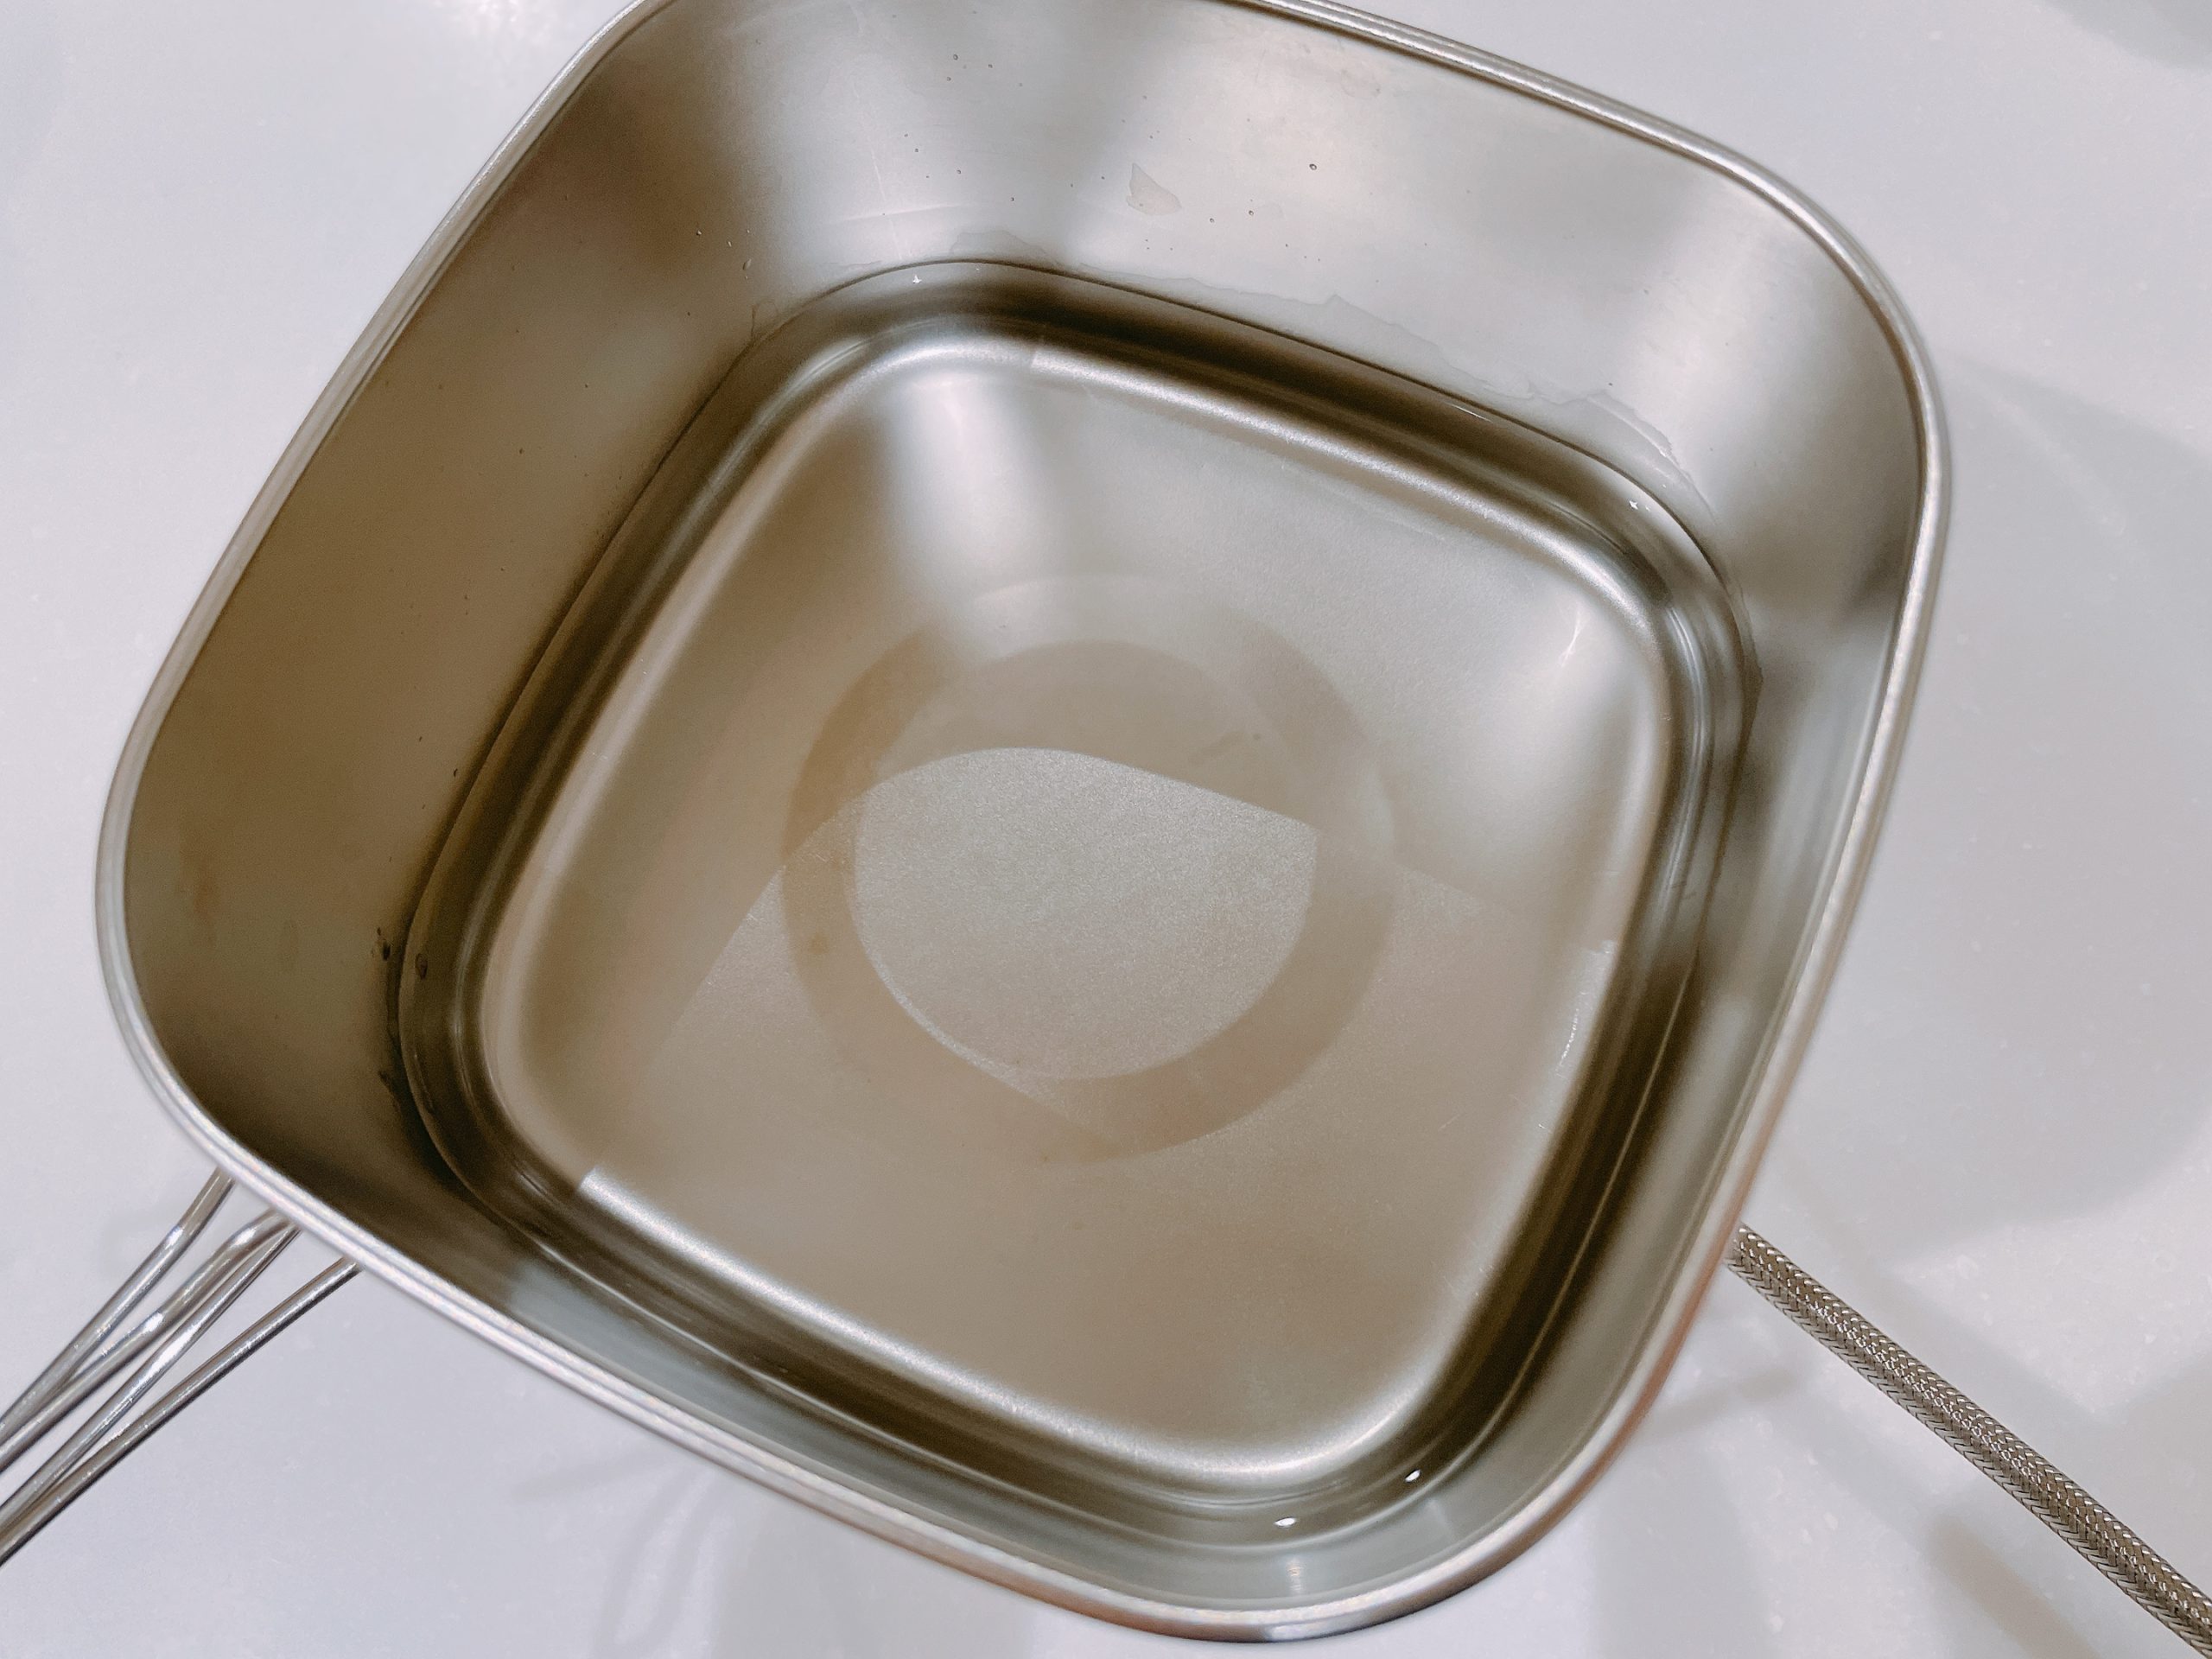 PP-04 SOLA Relax -ソラリラ- 角型キャンピング鍋 6点セットの角型鍋に水を入れる